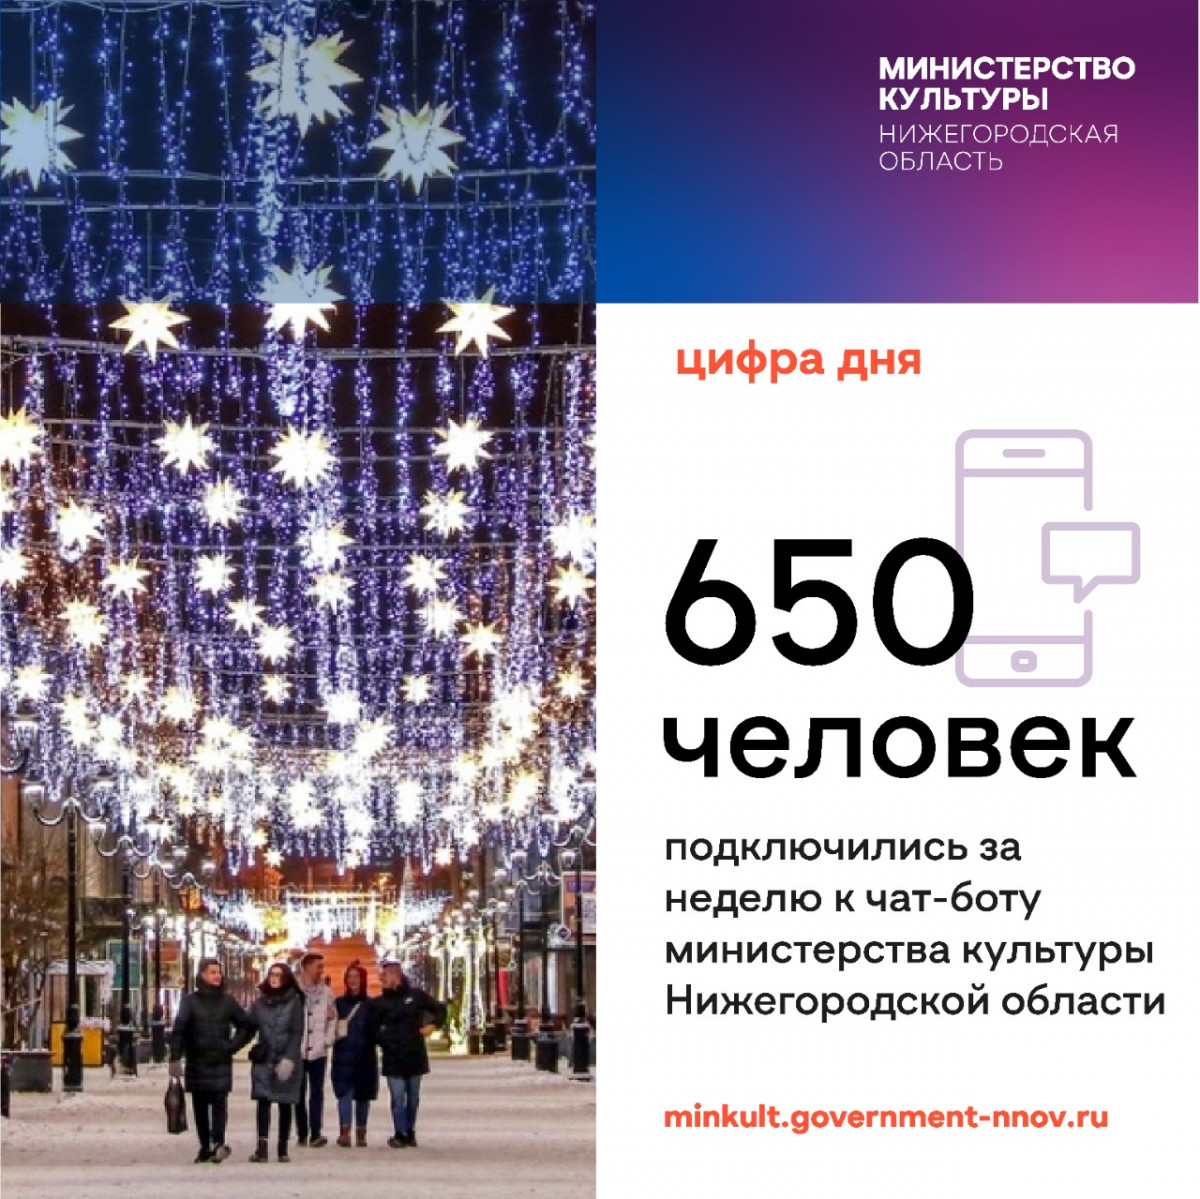 Более 650 человек воспользовались чат-ботом министерства культуры Нижегородской области